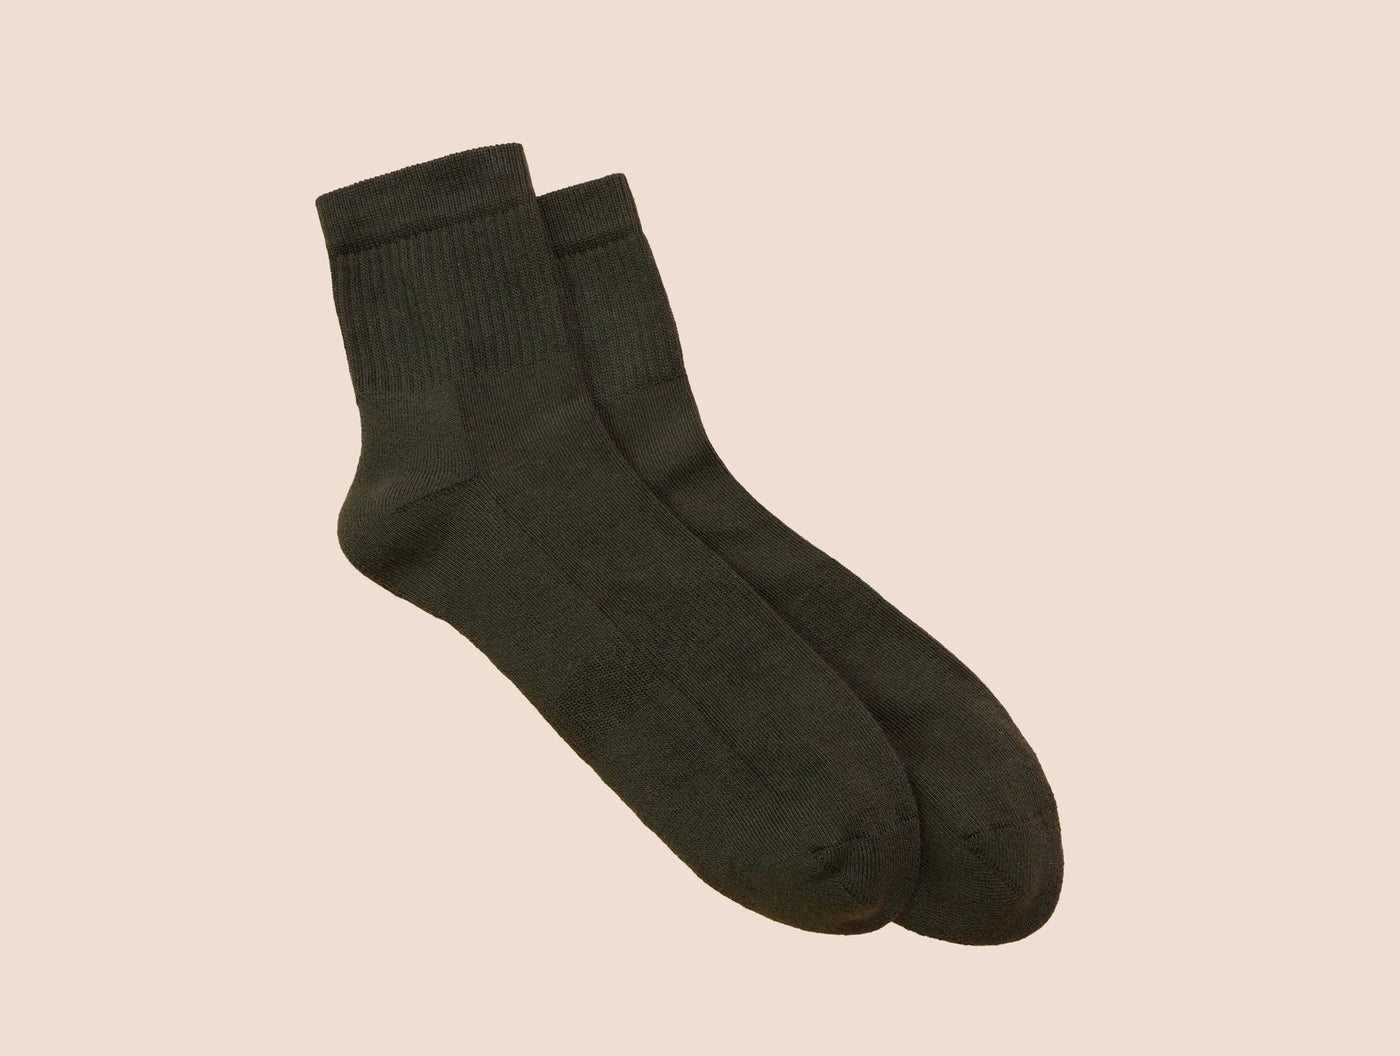 Petrone-chaussettes-tennis-coton-bio-unies-basses-homme-vert kaki-posees#couleur_vert kaki foncé